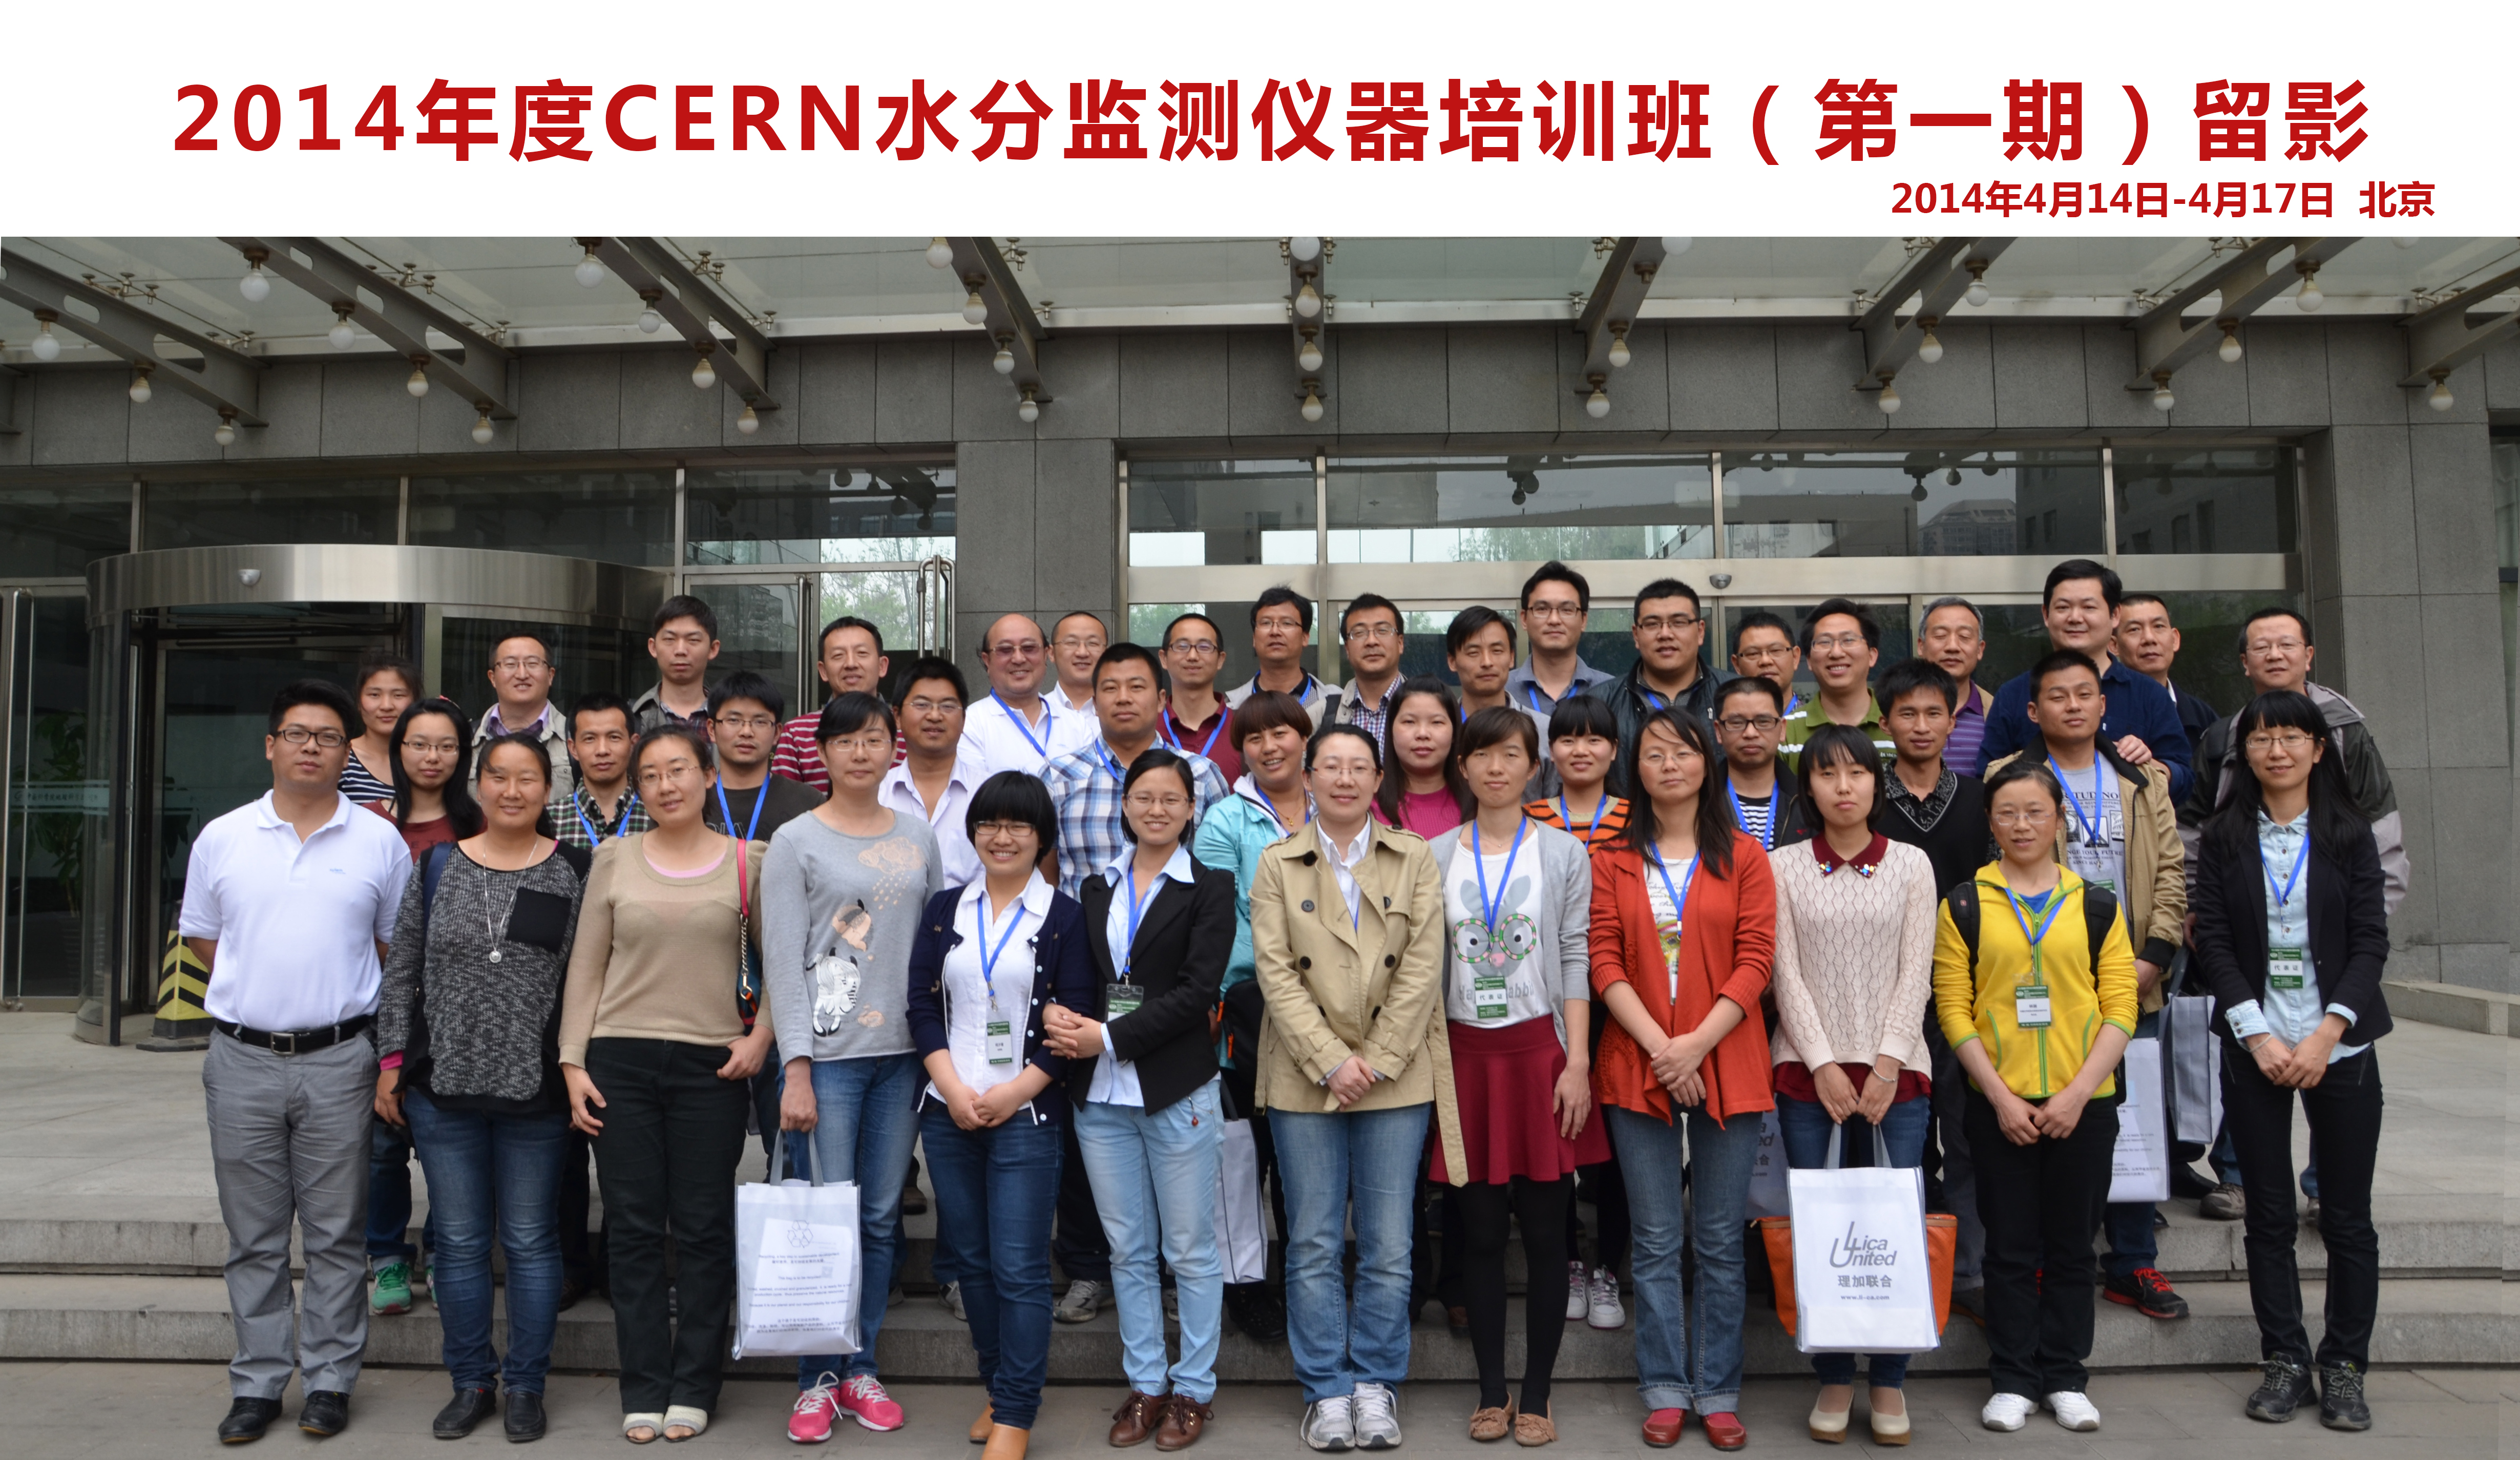 祝贺2014年度CERN水分监测仪器培训班（第一期）成功举办